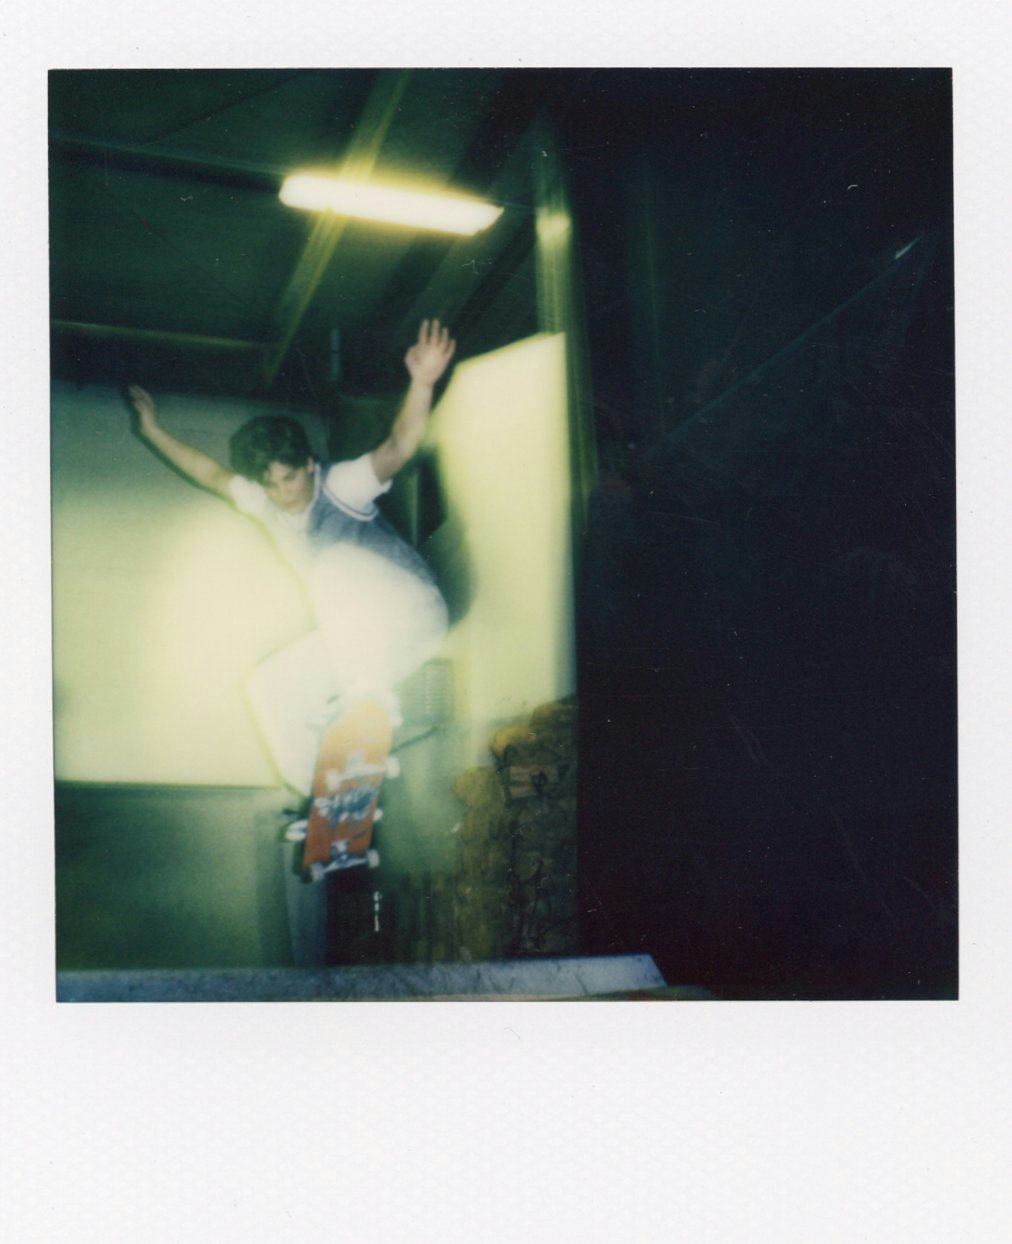 Polaroid of kid skating in air